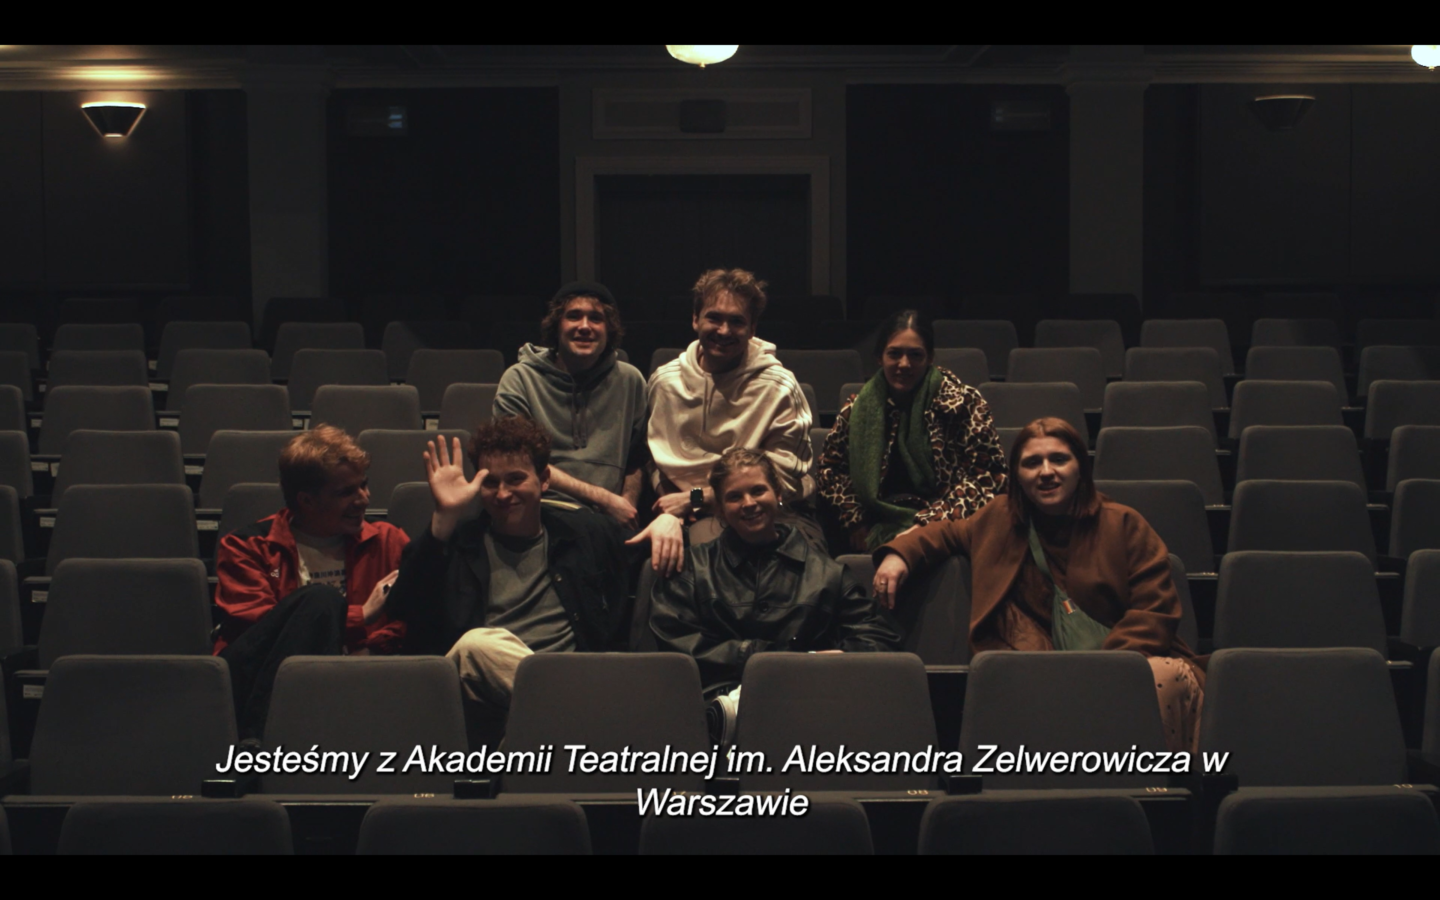 Kadr z filmu. W teatralnej widowni siedzi siedmiu młodych ludzi. Poniżej nich widnieje napis: "Jesteśmy z Akademii Teatralnej im. Aleksandra Zelwerowicza w Warszawie".